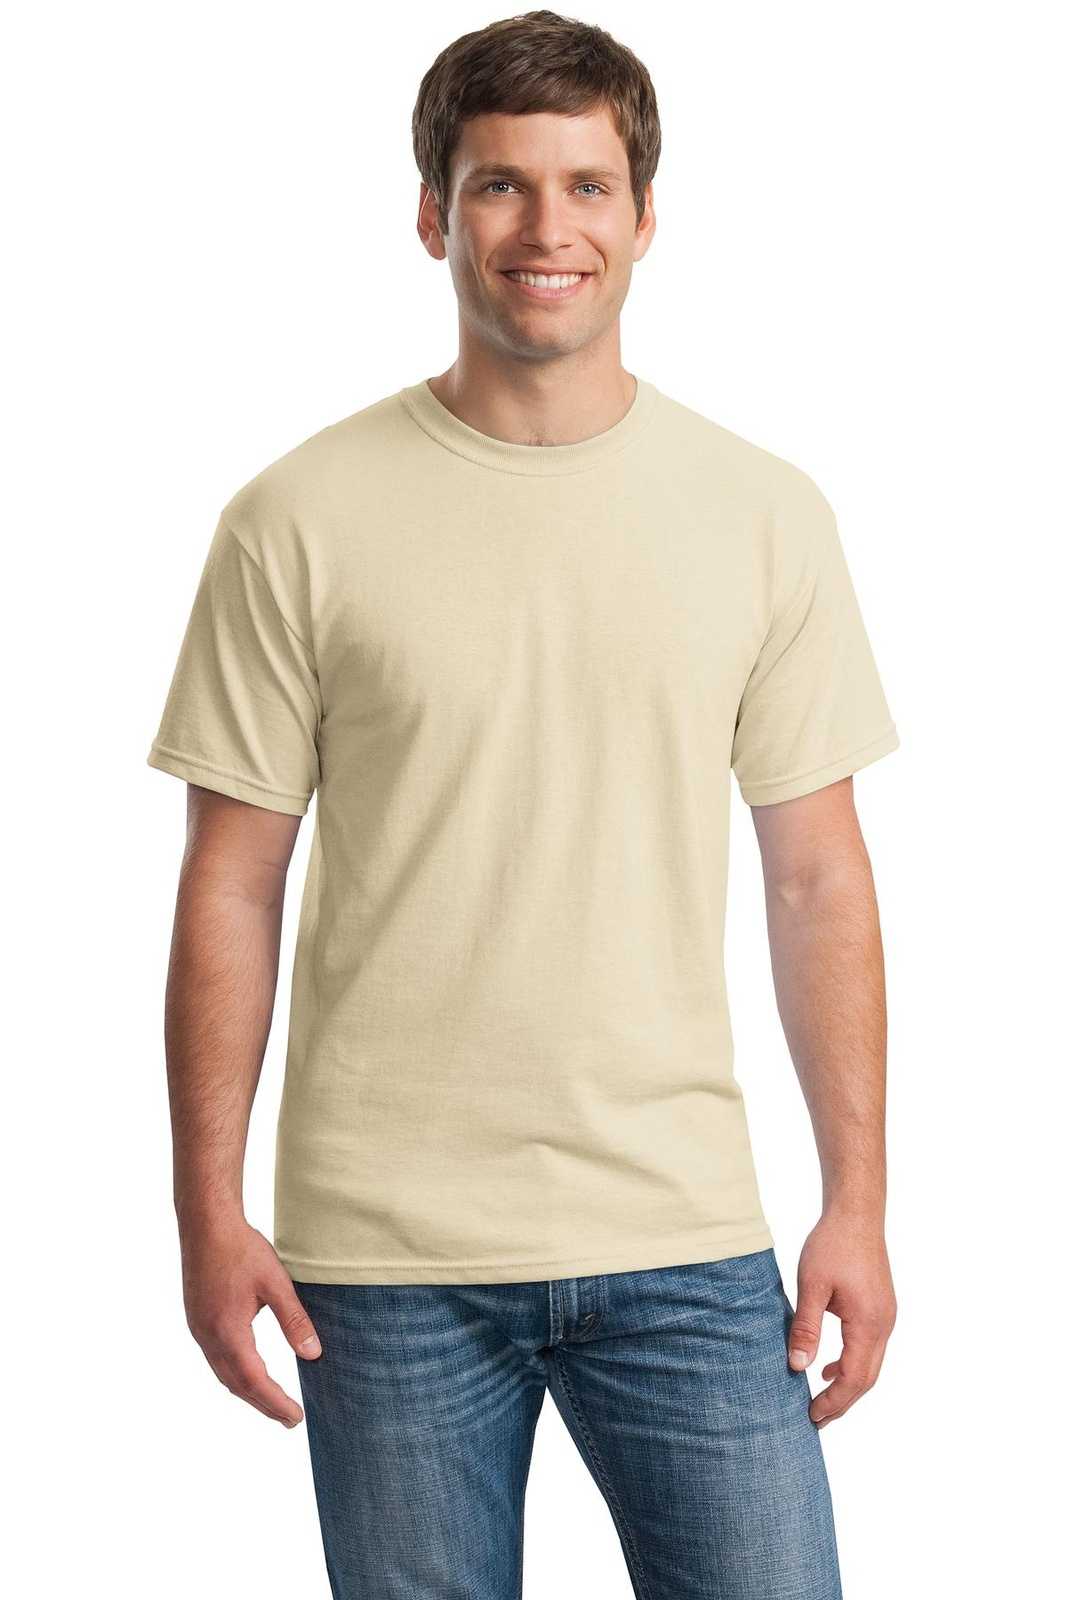 Gildan 5000 Heavy Cotton 100% Cotton T-Shirt - Sand - HIT a Double